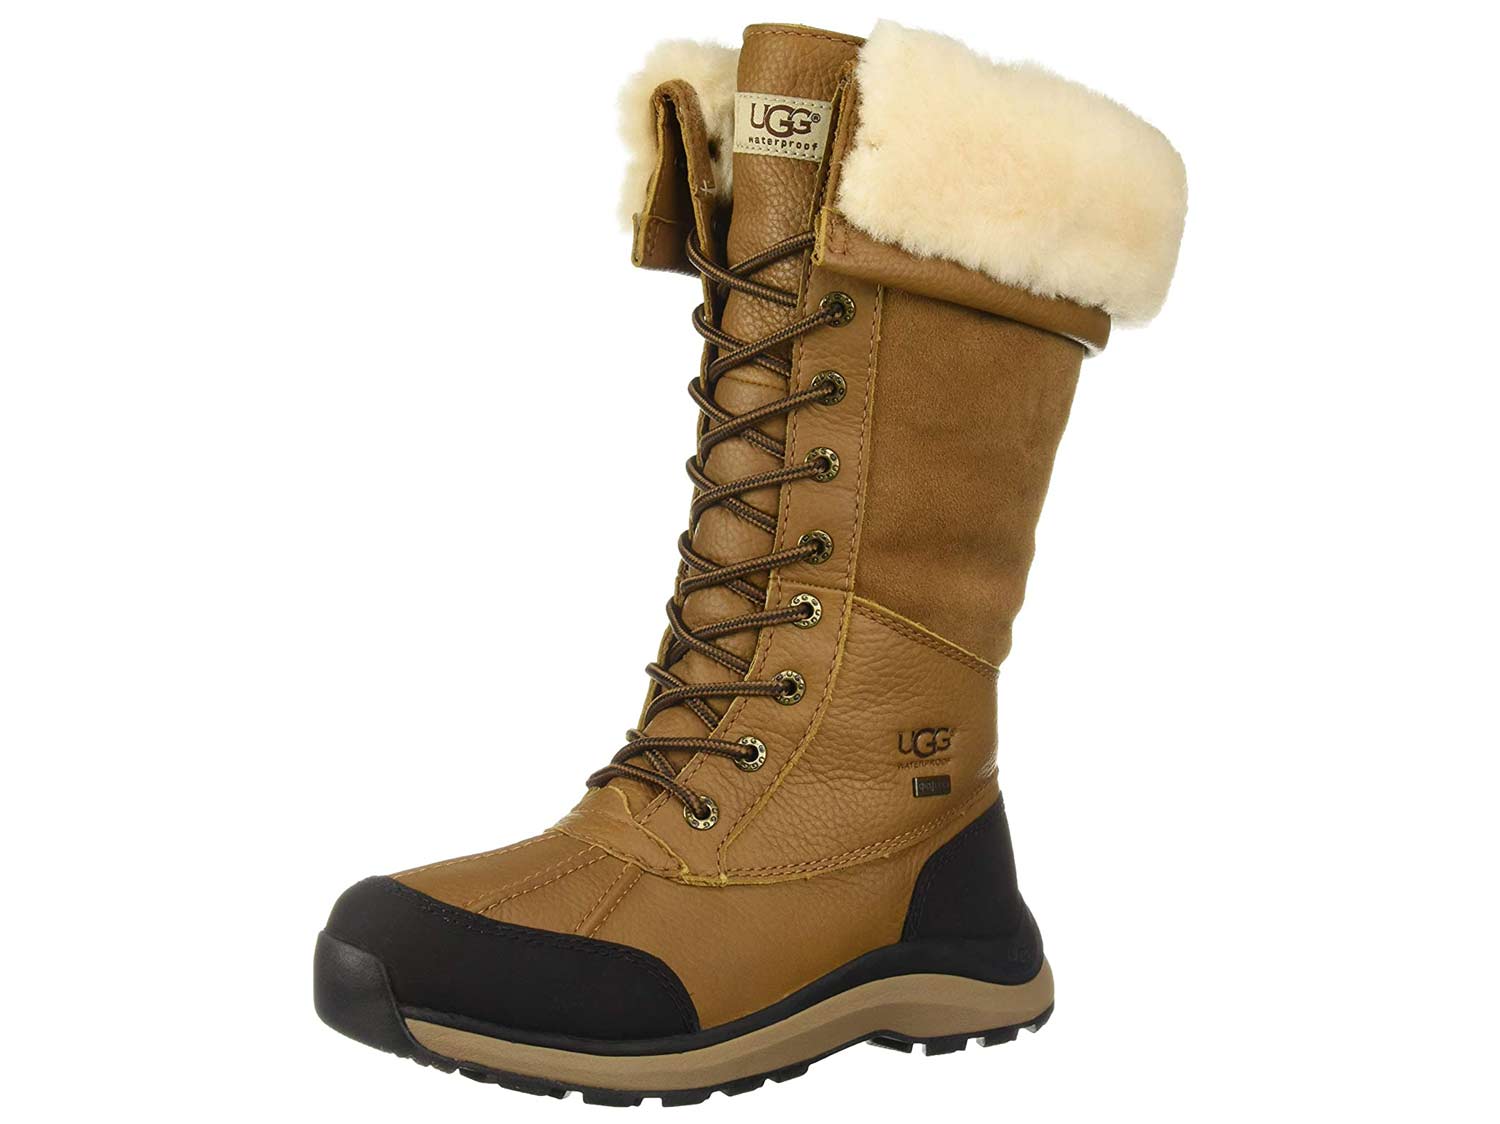 Ugg Adirondack III Boots